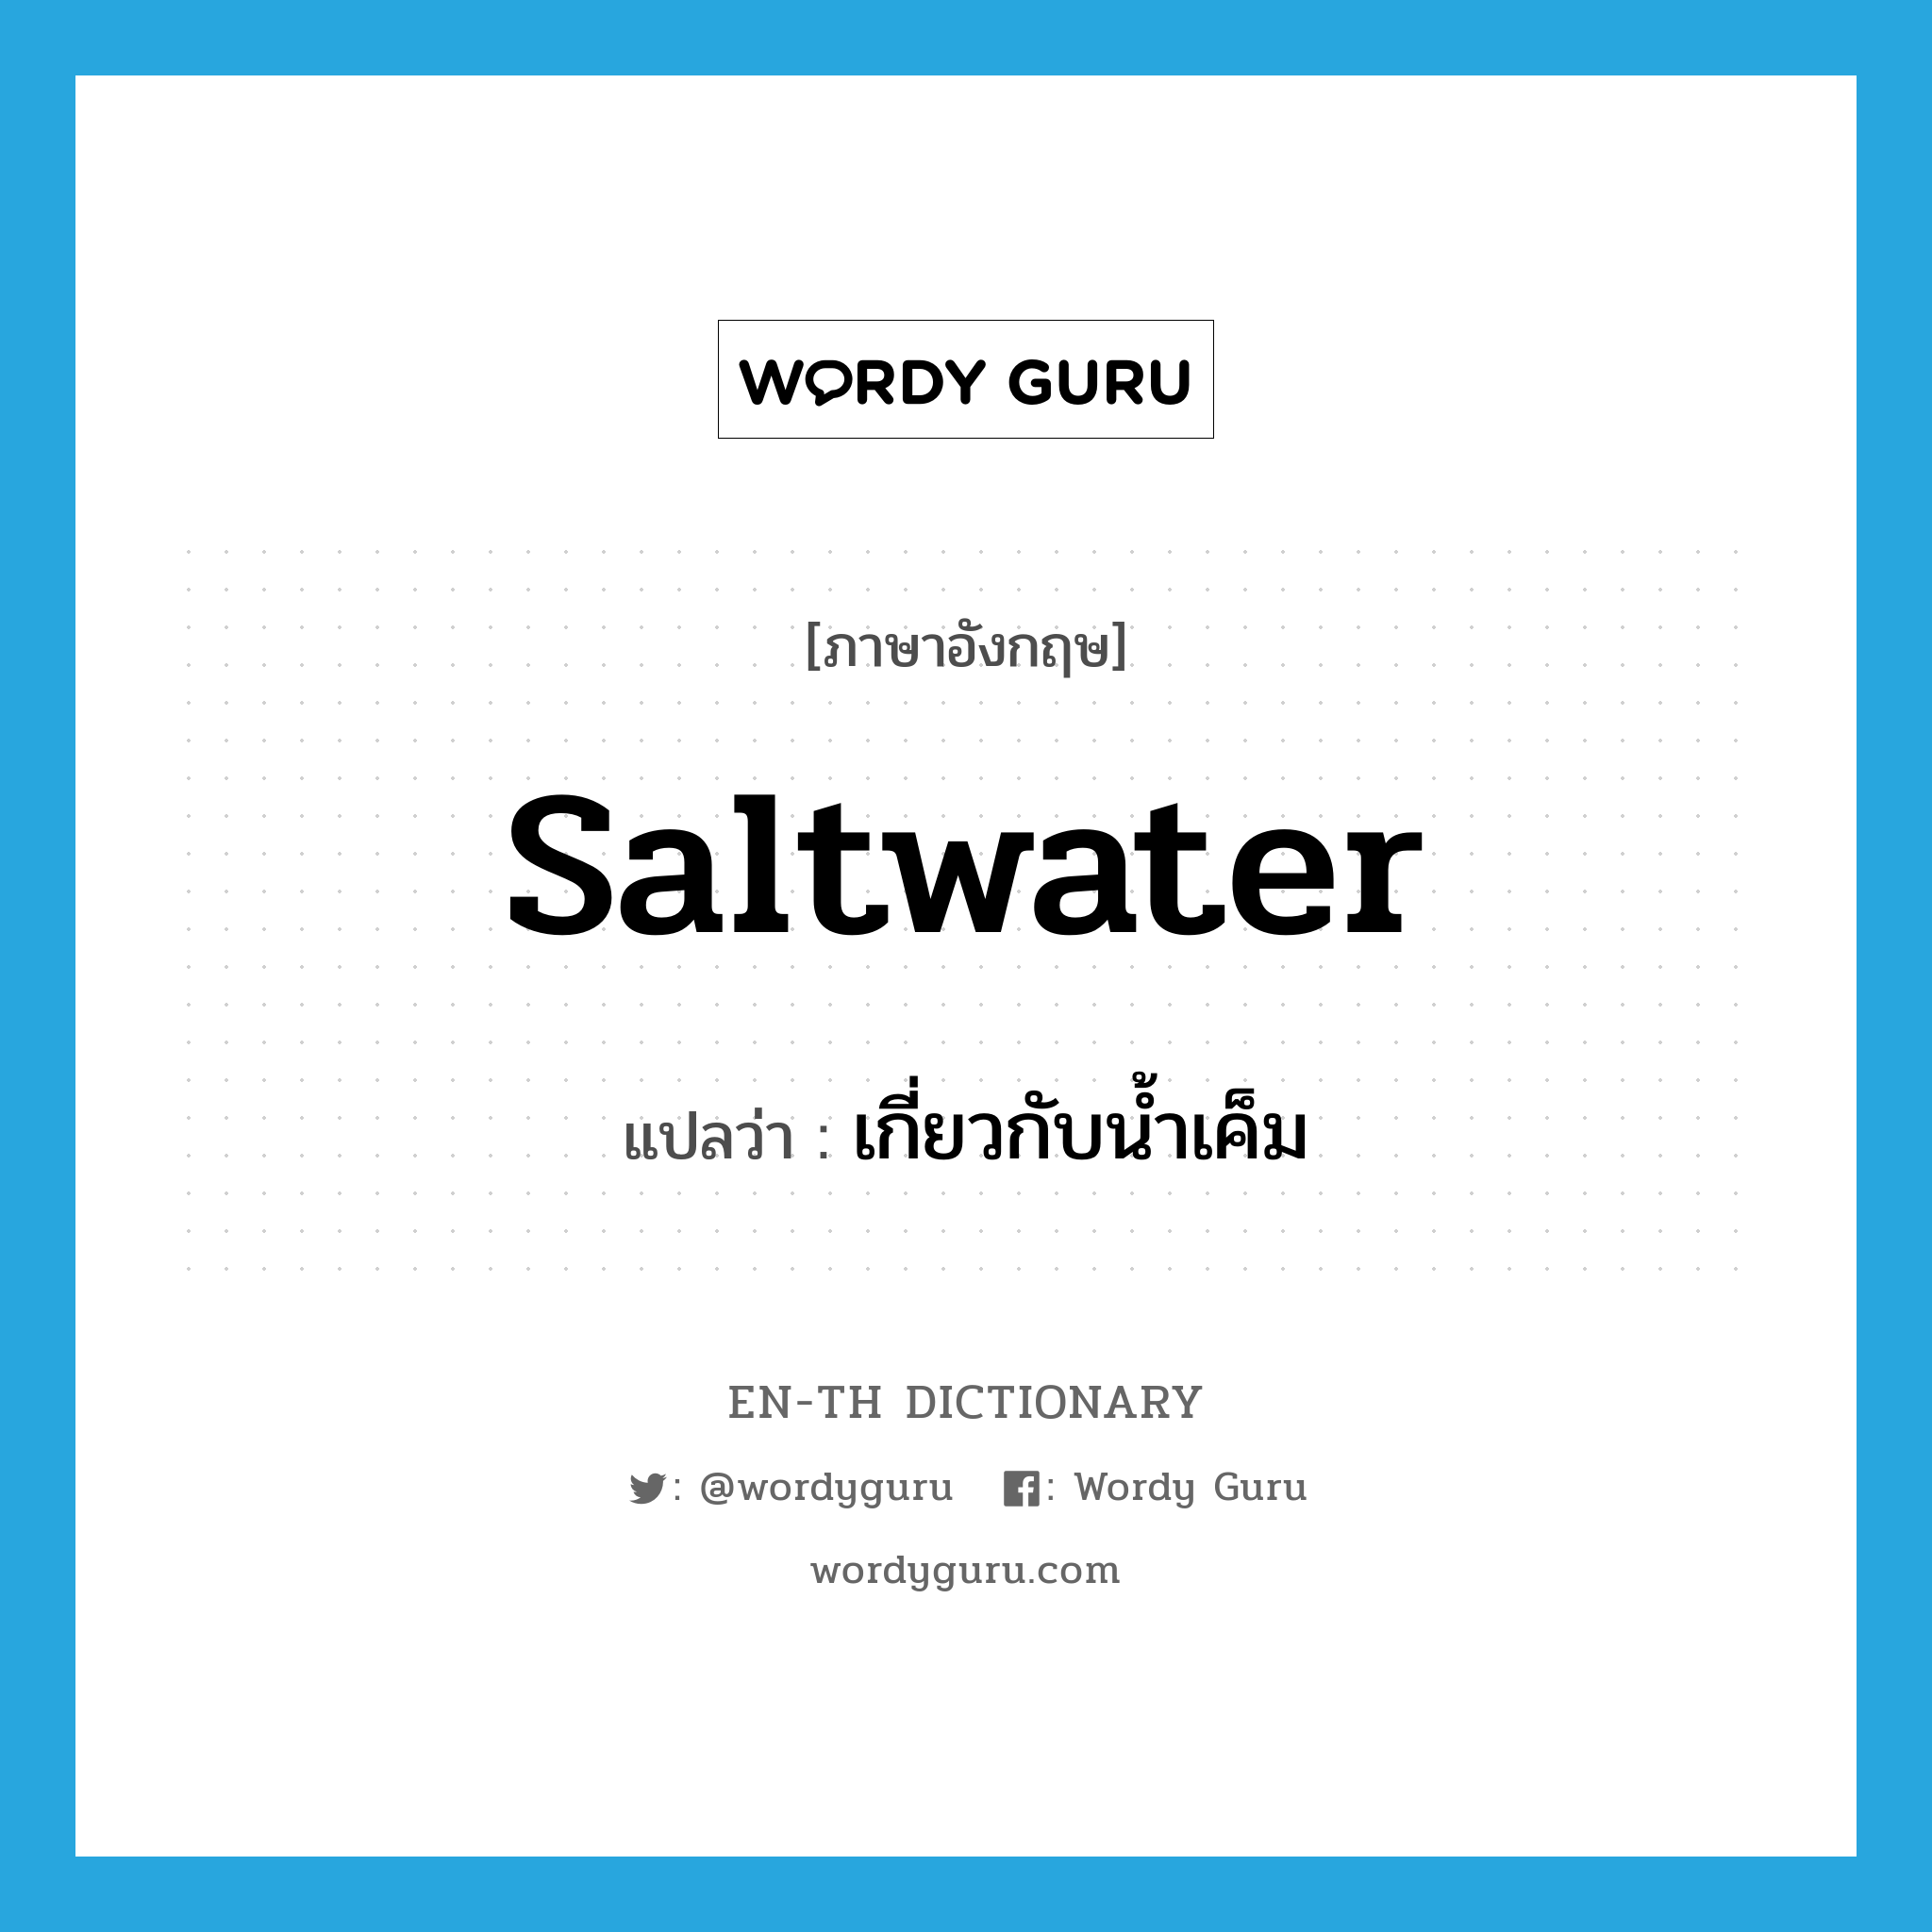 เกี่ยวกับน้ำเค็ม ภาษาอังกฤษ?, คำศัพท์ภาษาอังกฤษ เกี่ยวกับน้ำเค็ม แปลว่า saltwater ประเภท ADJ หมวด ADJ